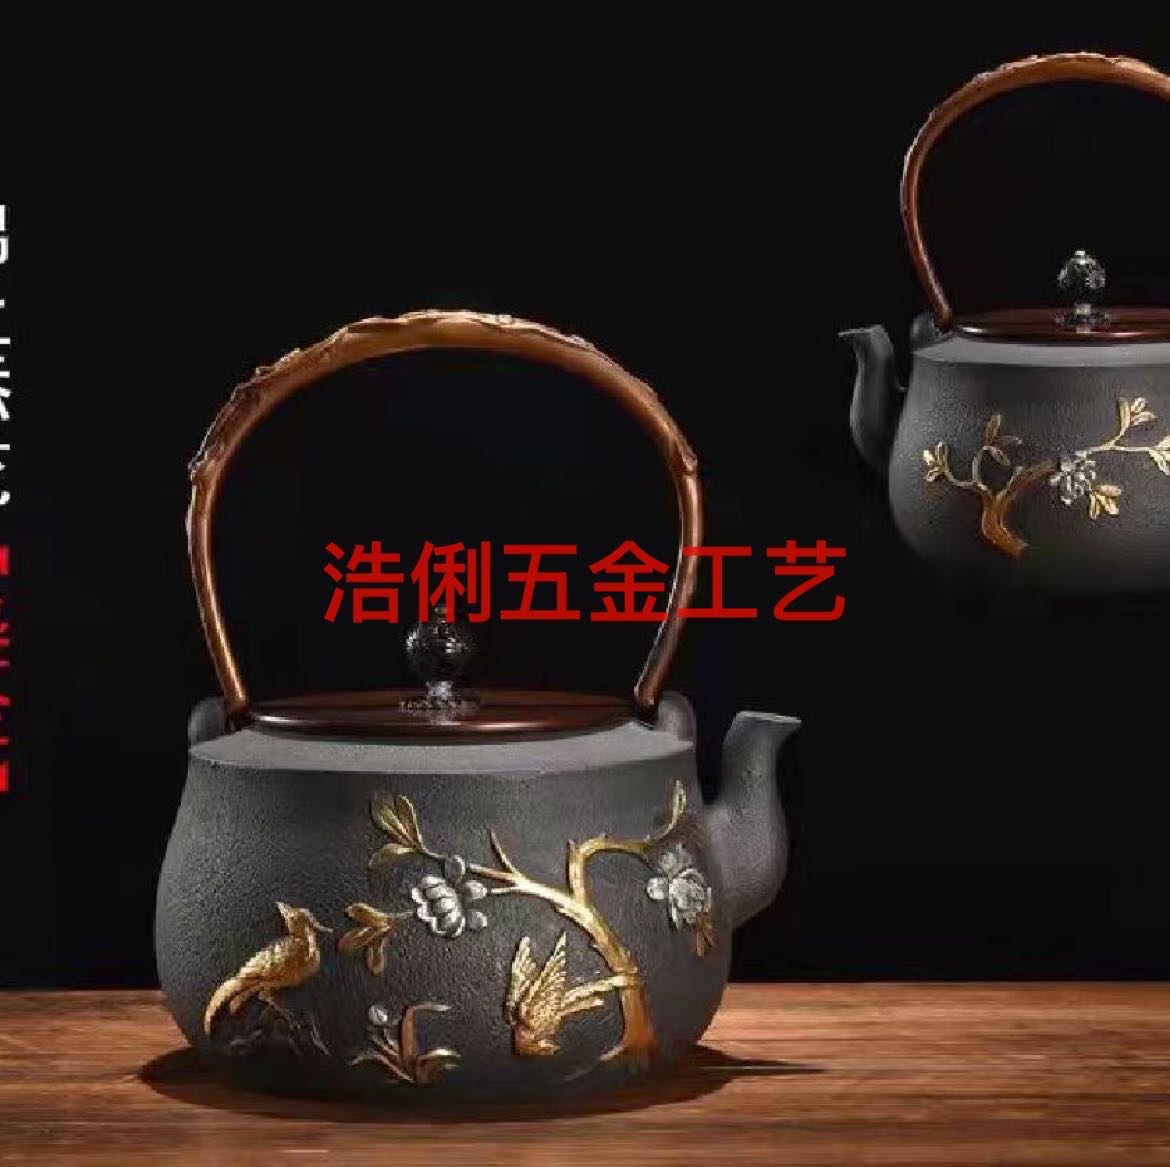 老铁壶搪瓷铸铁茶壶高档茶具套装生铁壶中高低端茶壶批发零售图